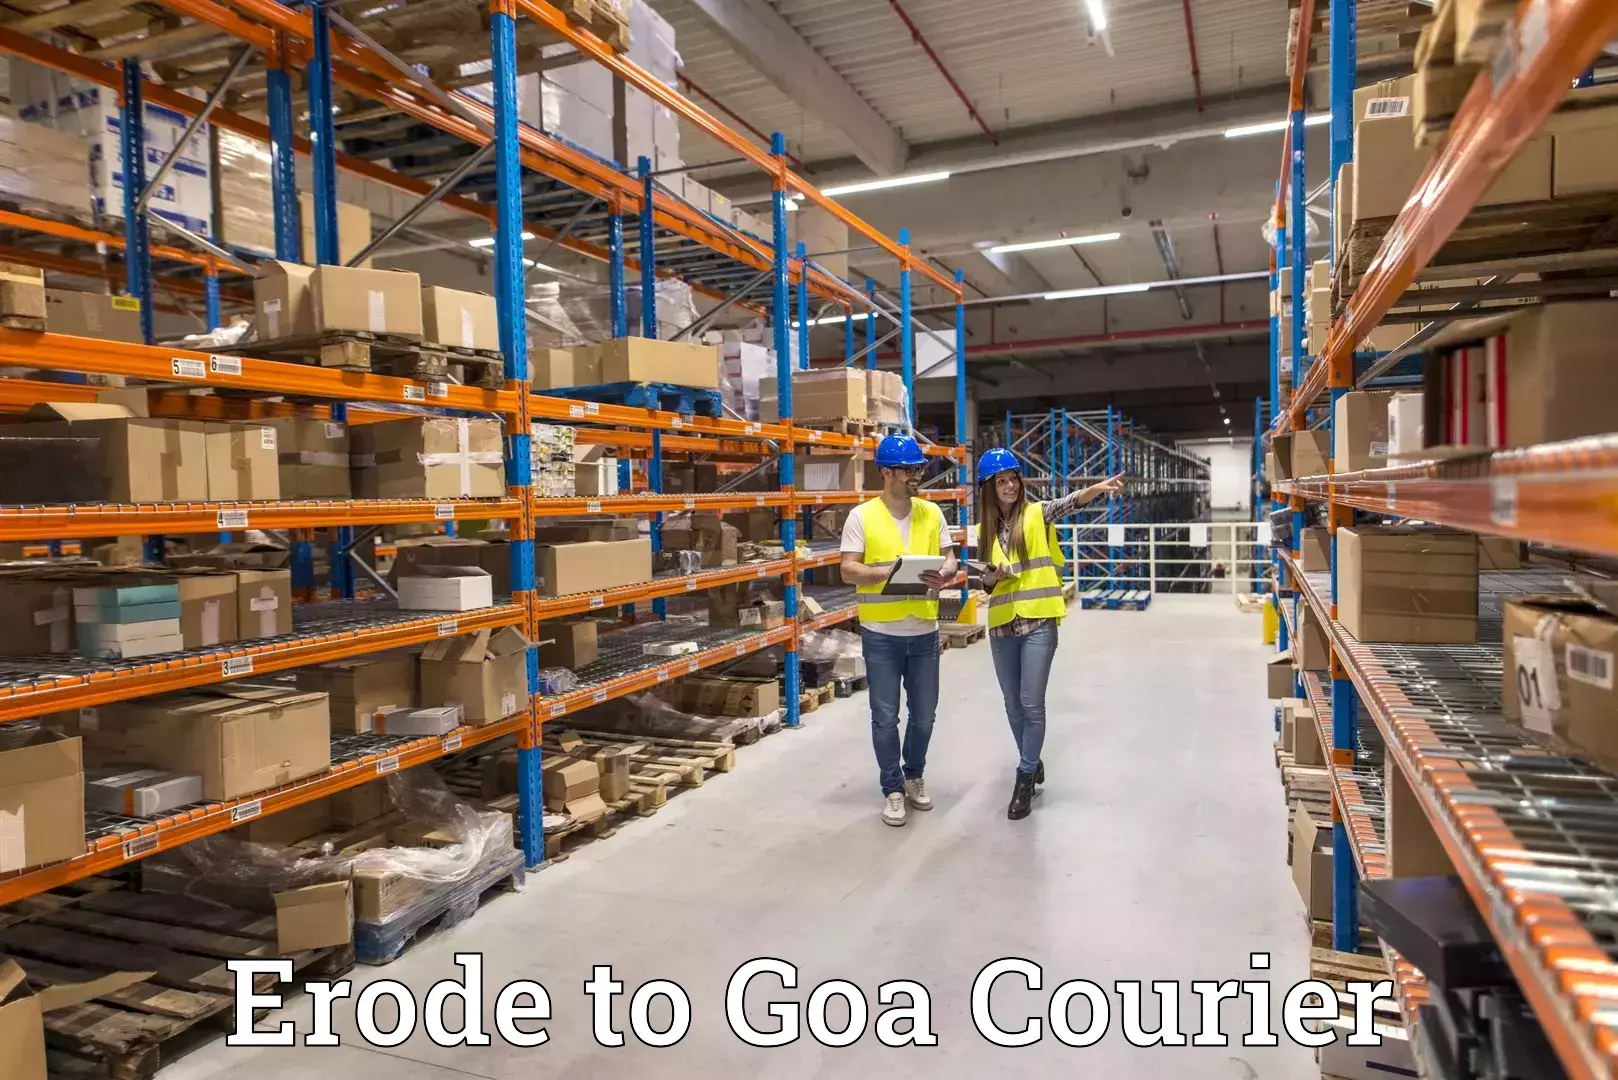 Logistics service provider Erode to South Goa